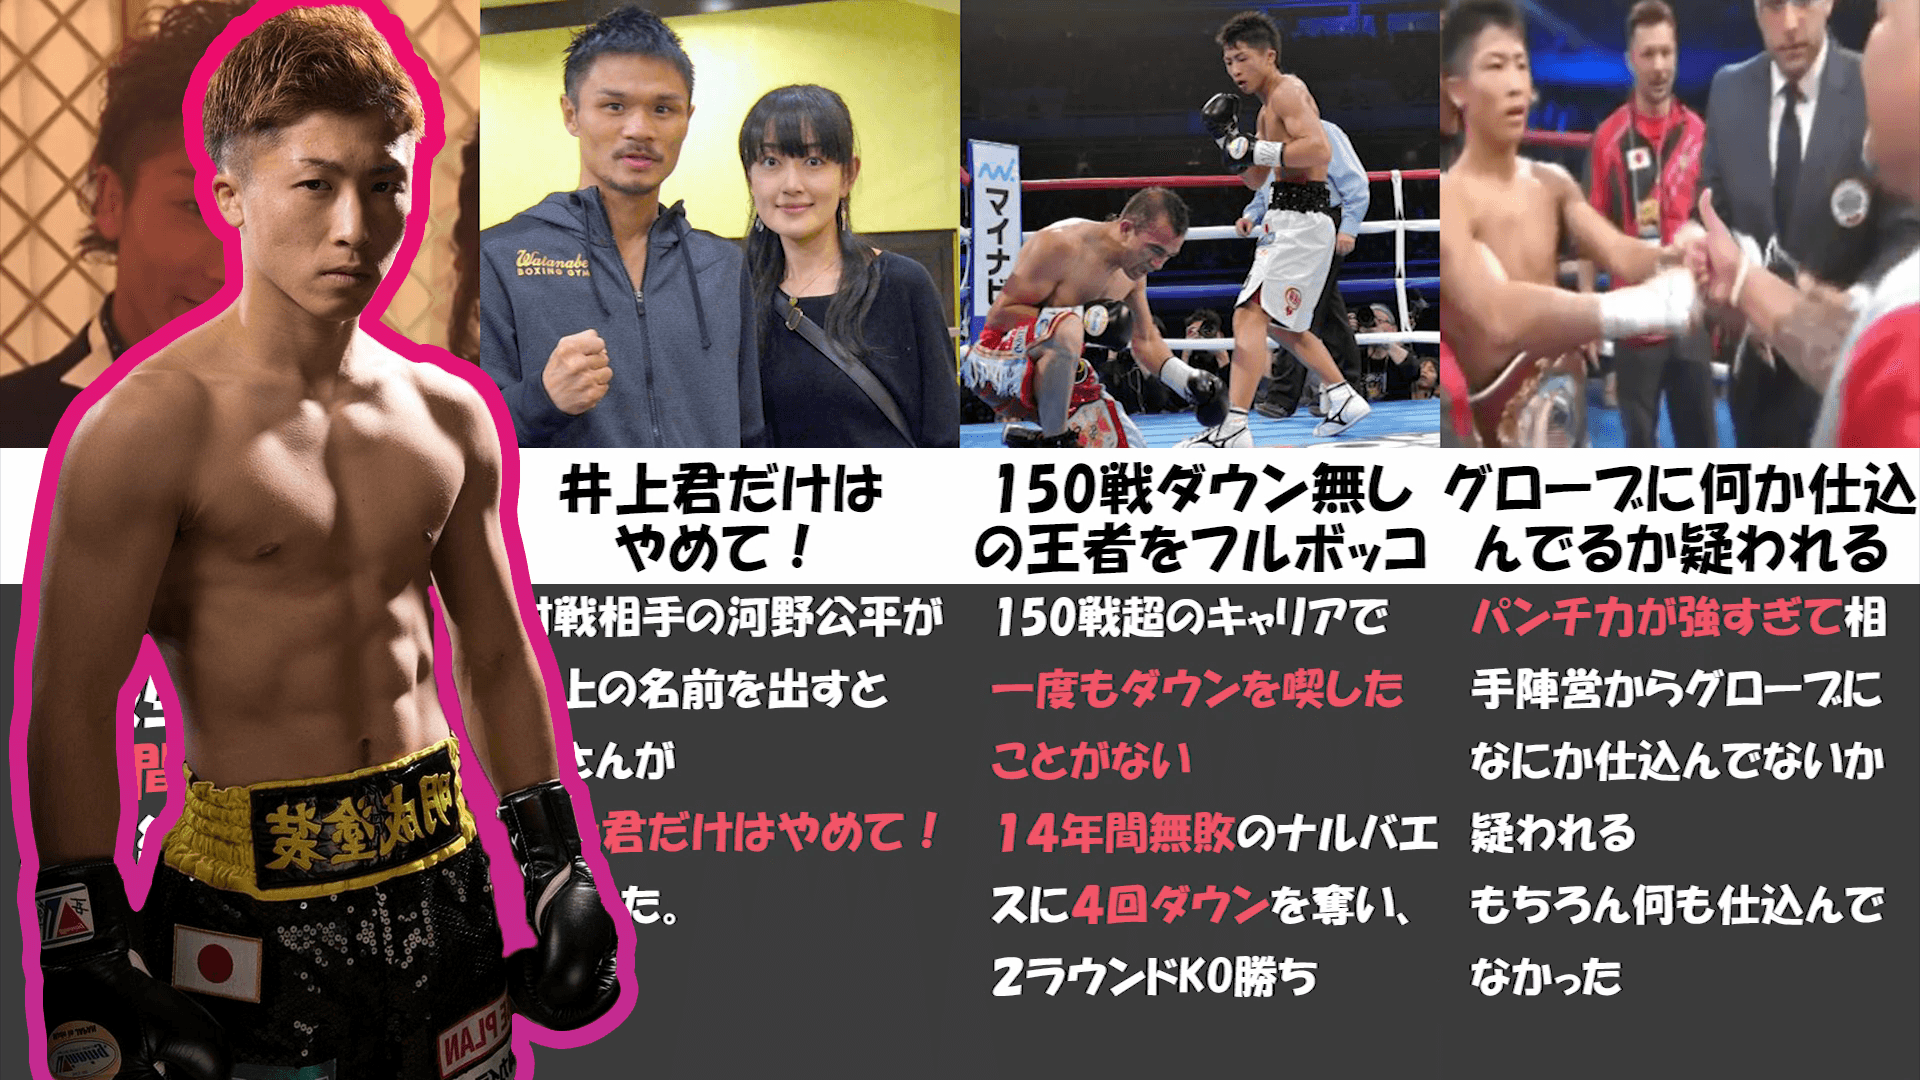 日本史上最高のボクサー井上尚弥の伝説 エピソードがすごすぎた 格闘技情報チャンネル